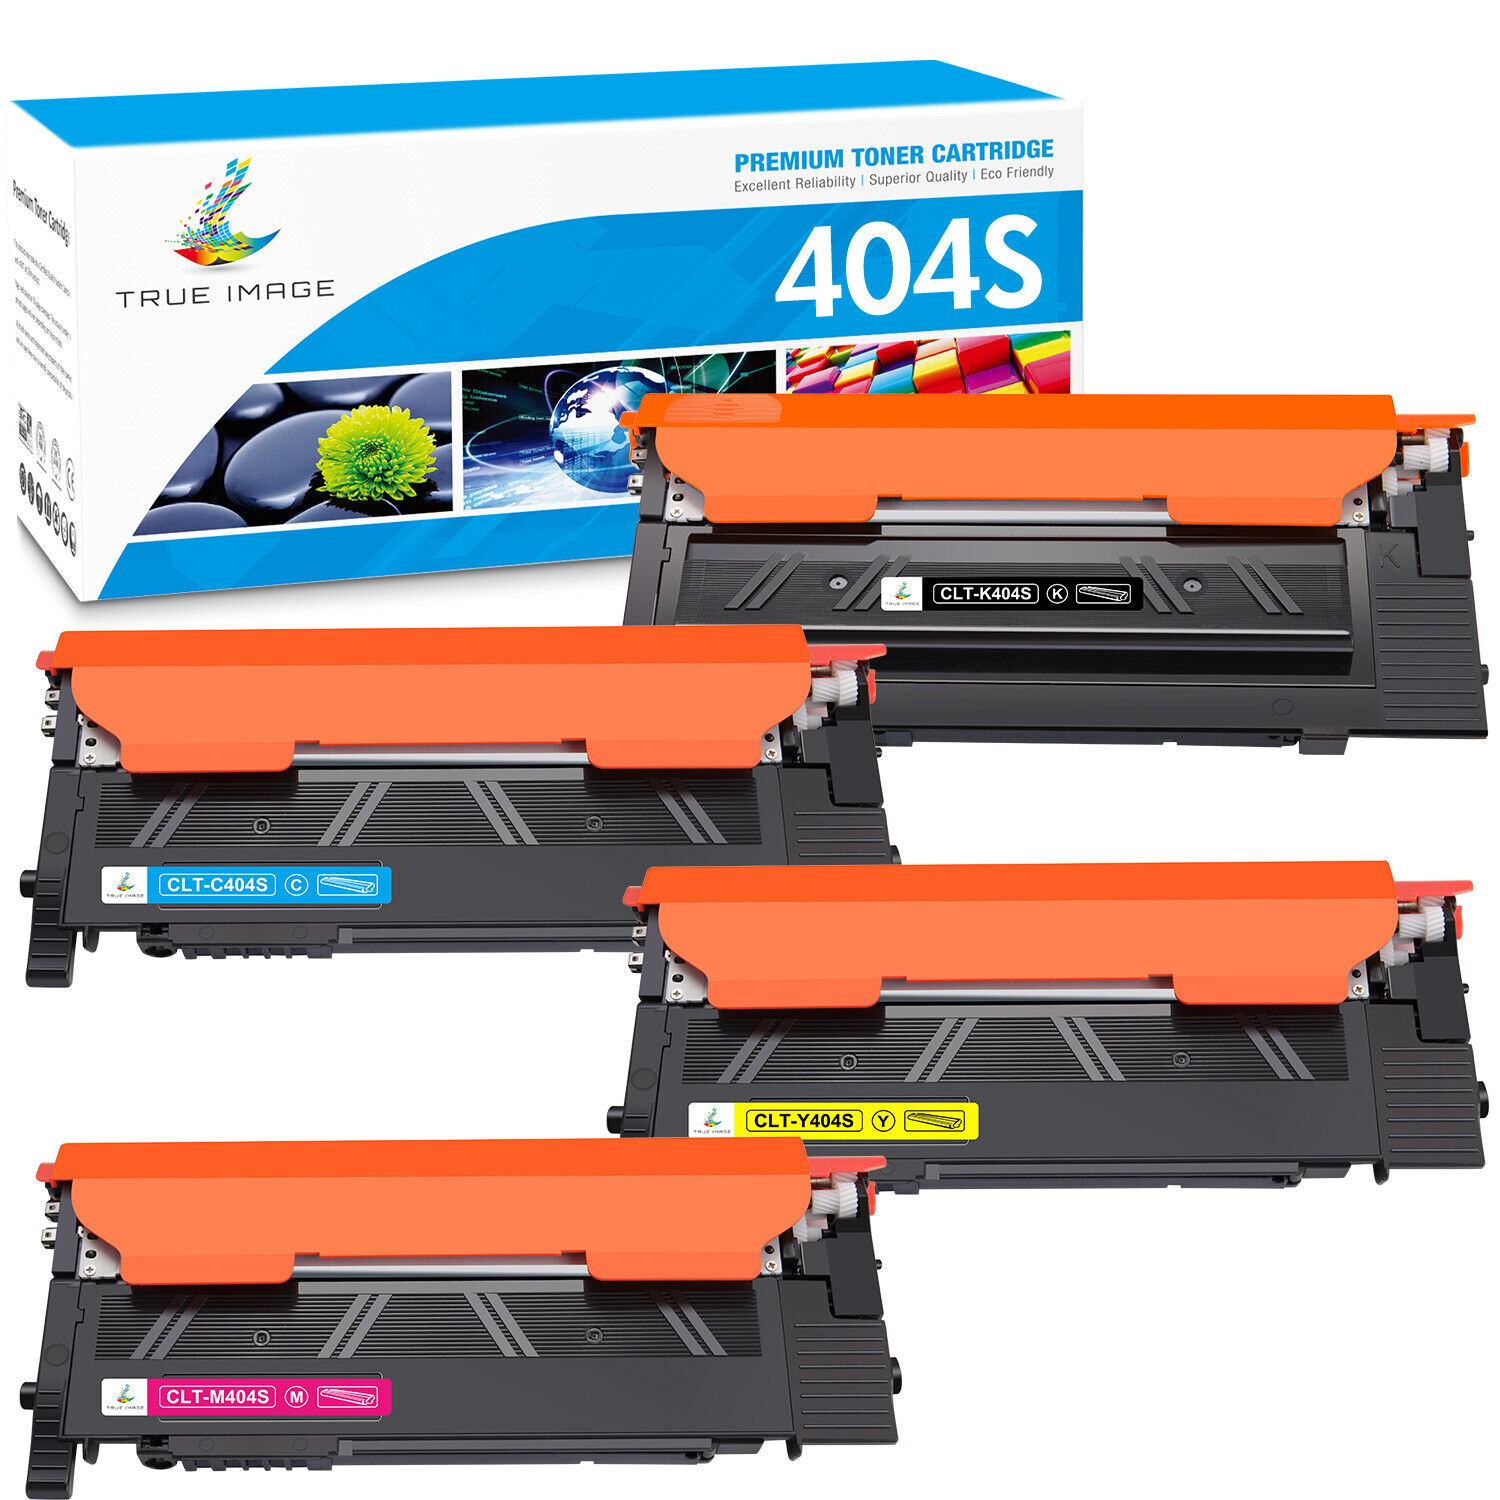 4pack CLT-404S Toner Cartridge for Samsung Xpress C430 C430W C480 C480FW C480W